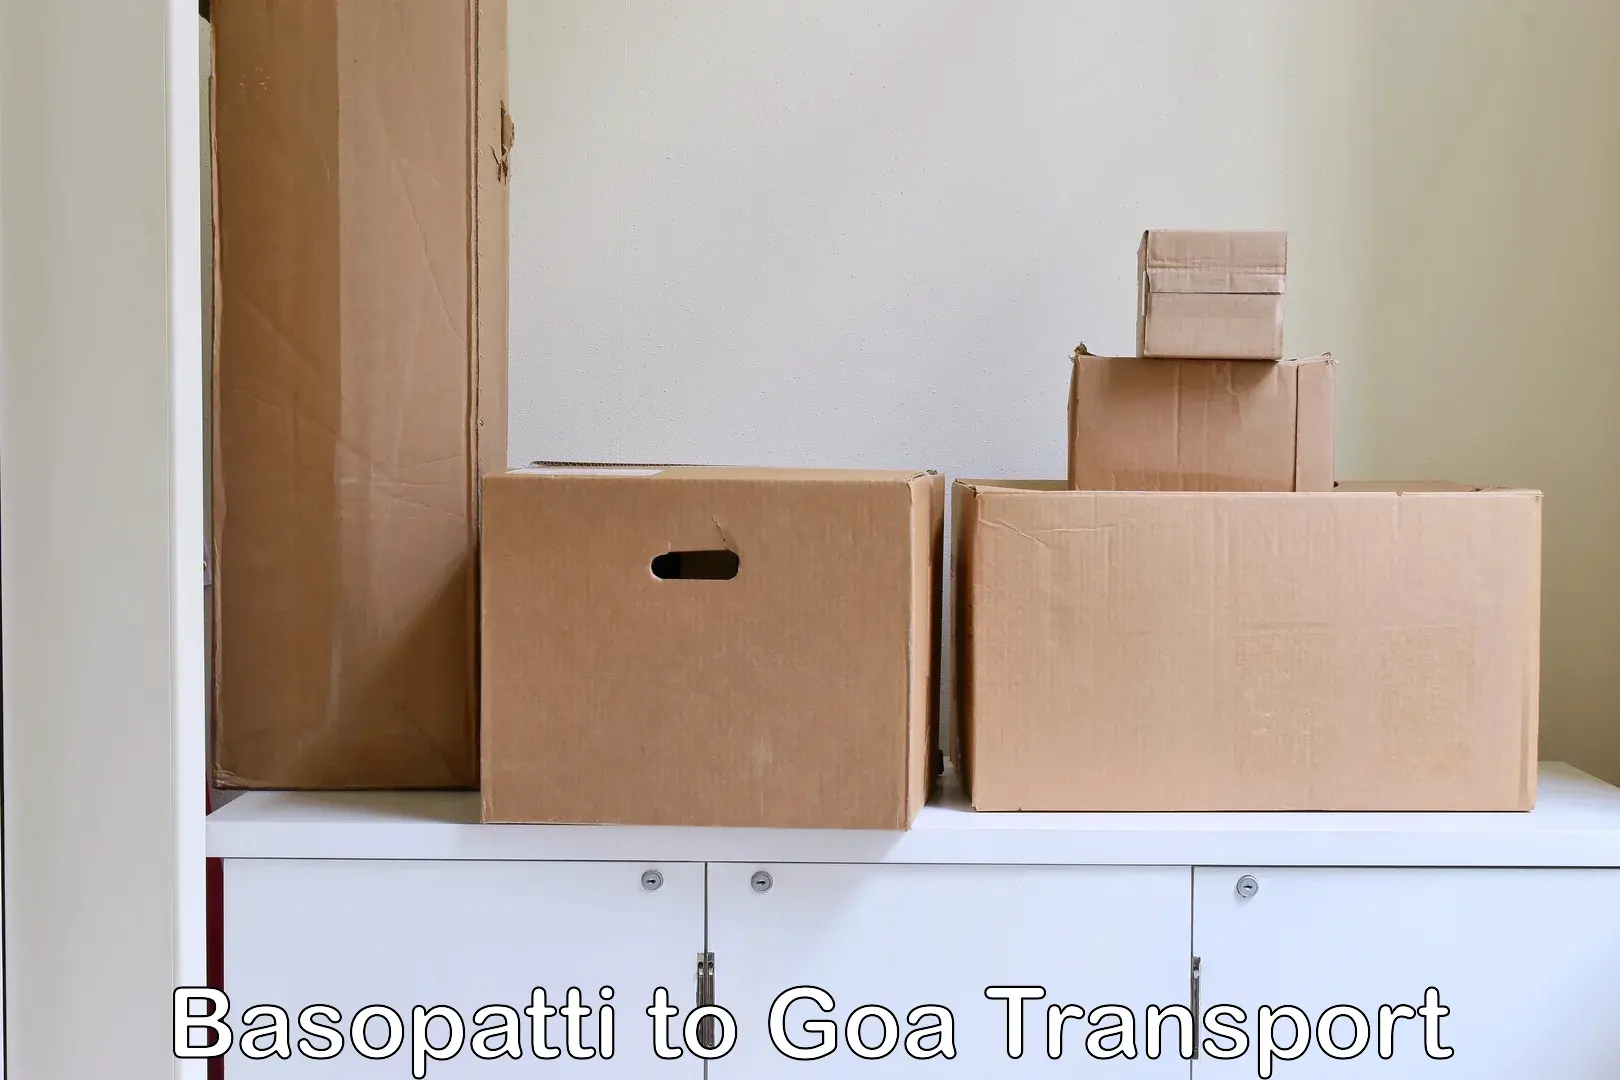 Container transport service Basopatti to Goa